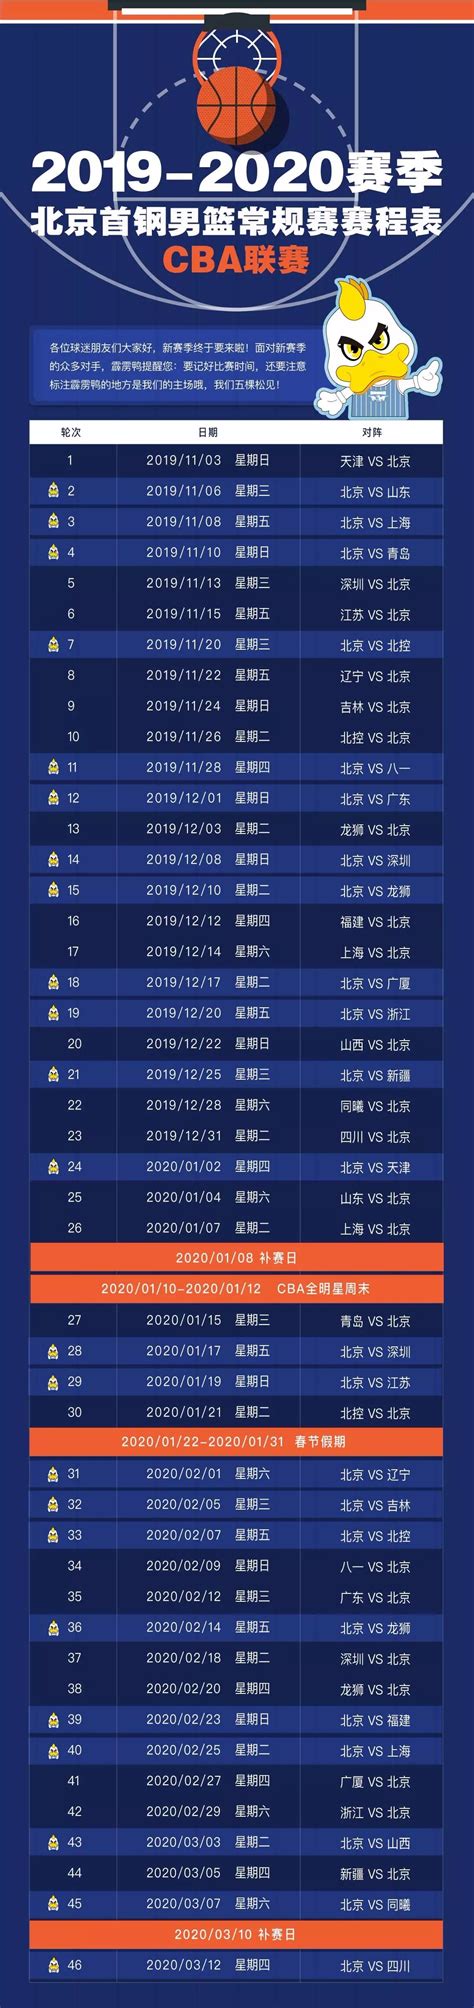 2019-2020赛季CBA北京首钢男篮主场赛座位图、赛程表、购票网址_大河票务网